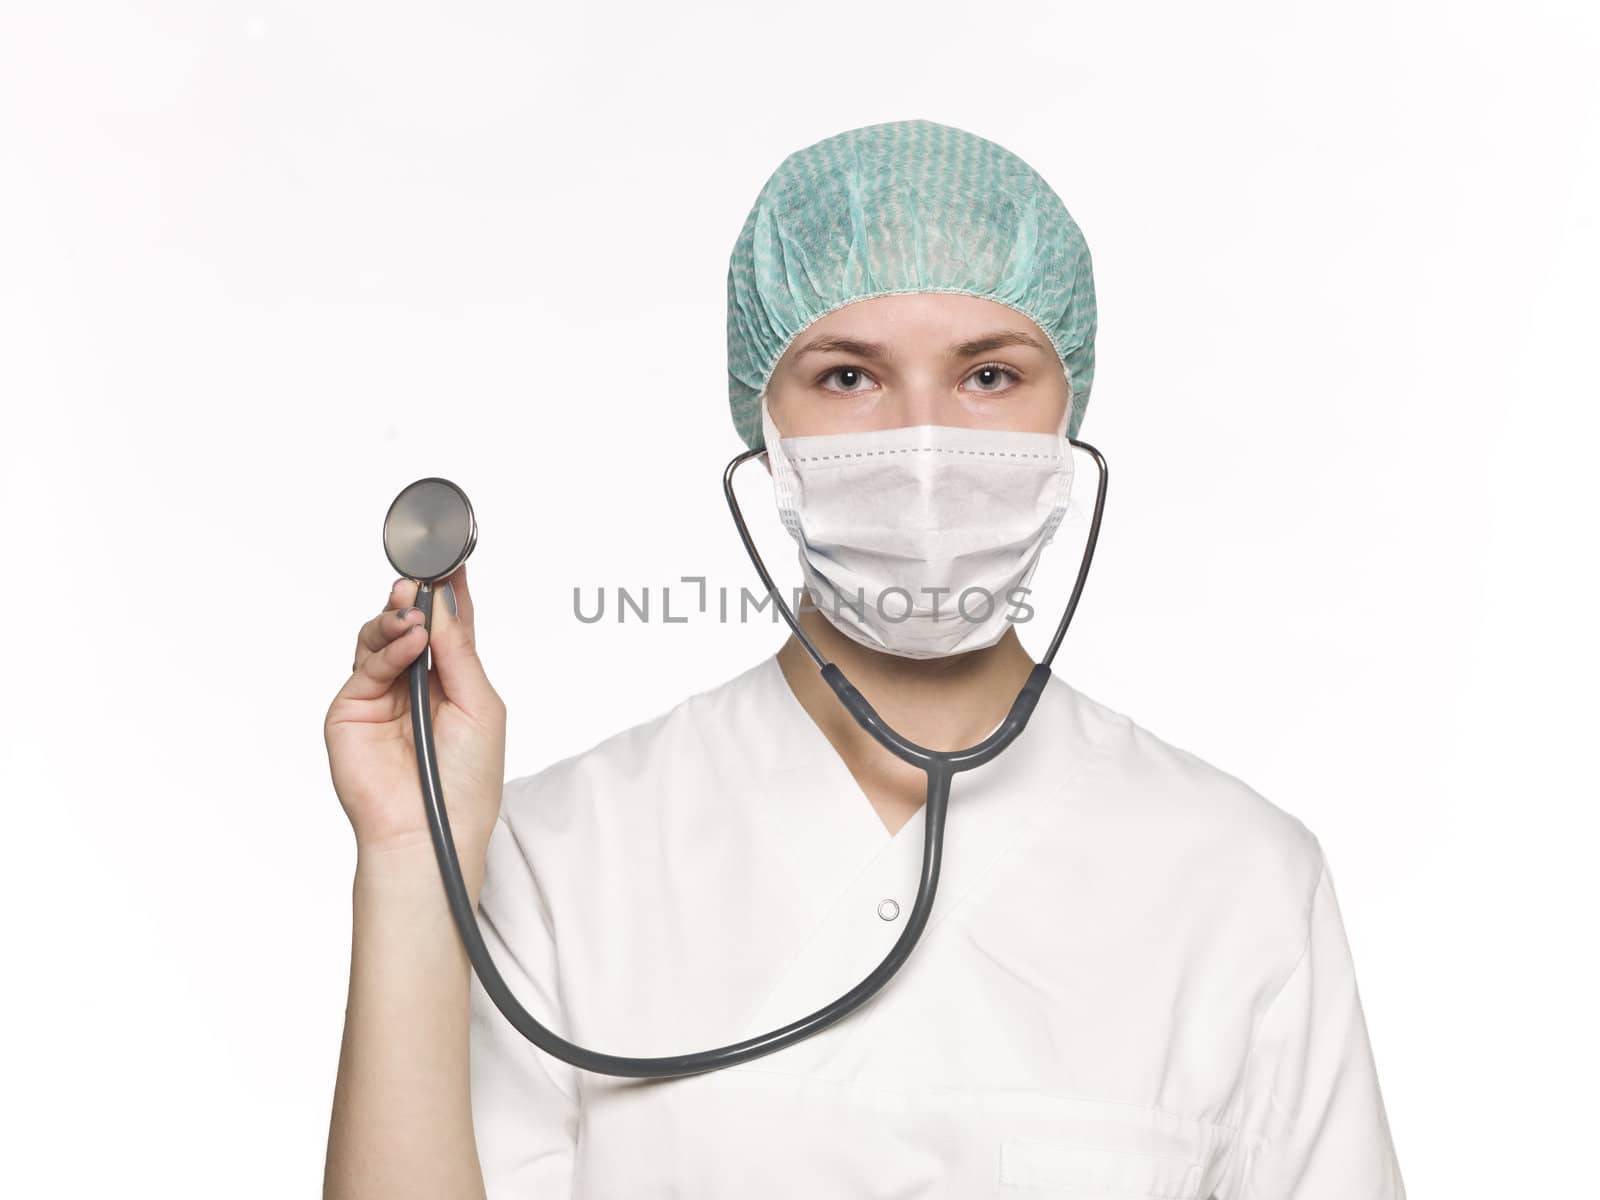 Female nurse with a stethoscope isolated towards white background